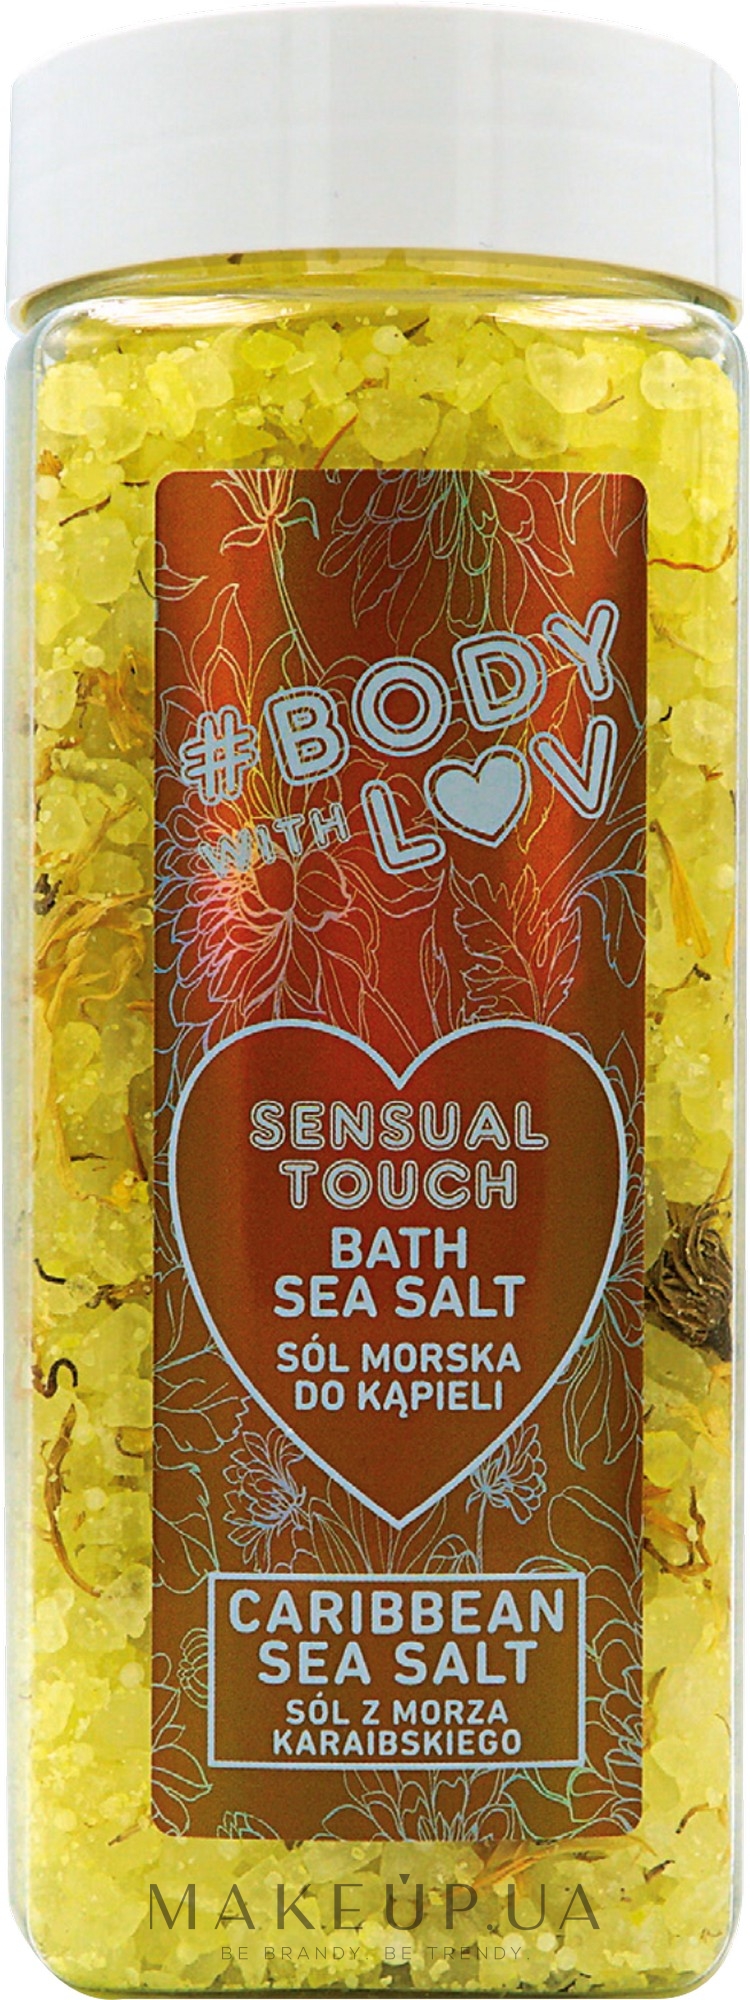 Соль для ванн - New Anna Cosmetics Body With Luv Sea Salt For Bath Sensual Touch — фото 500g